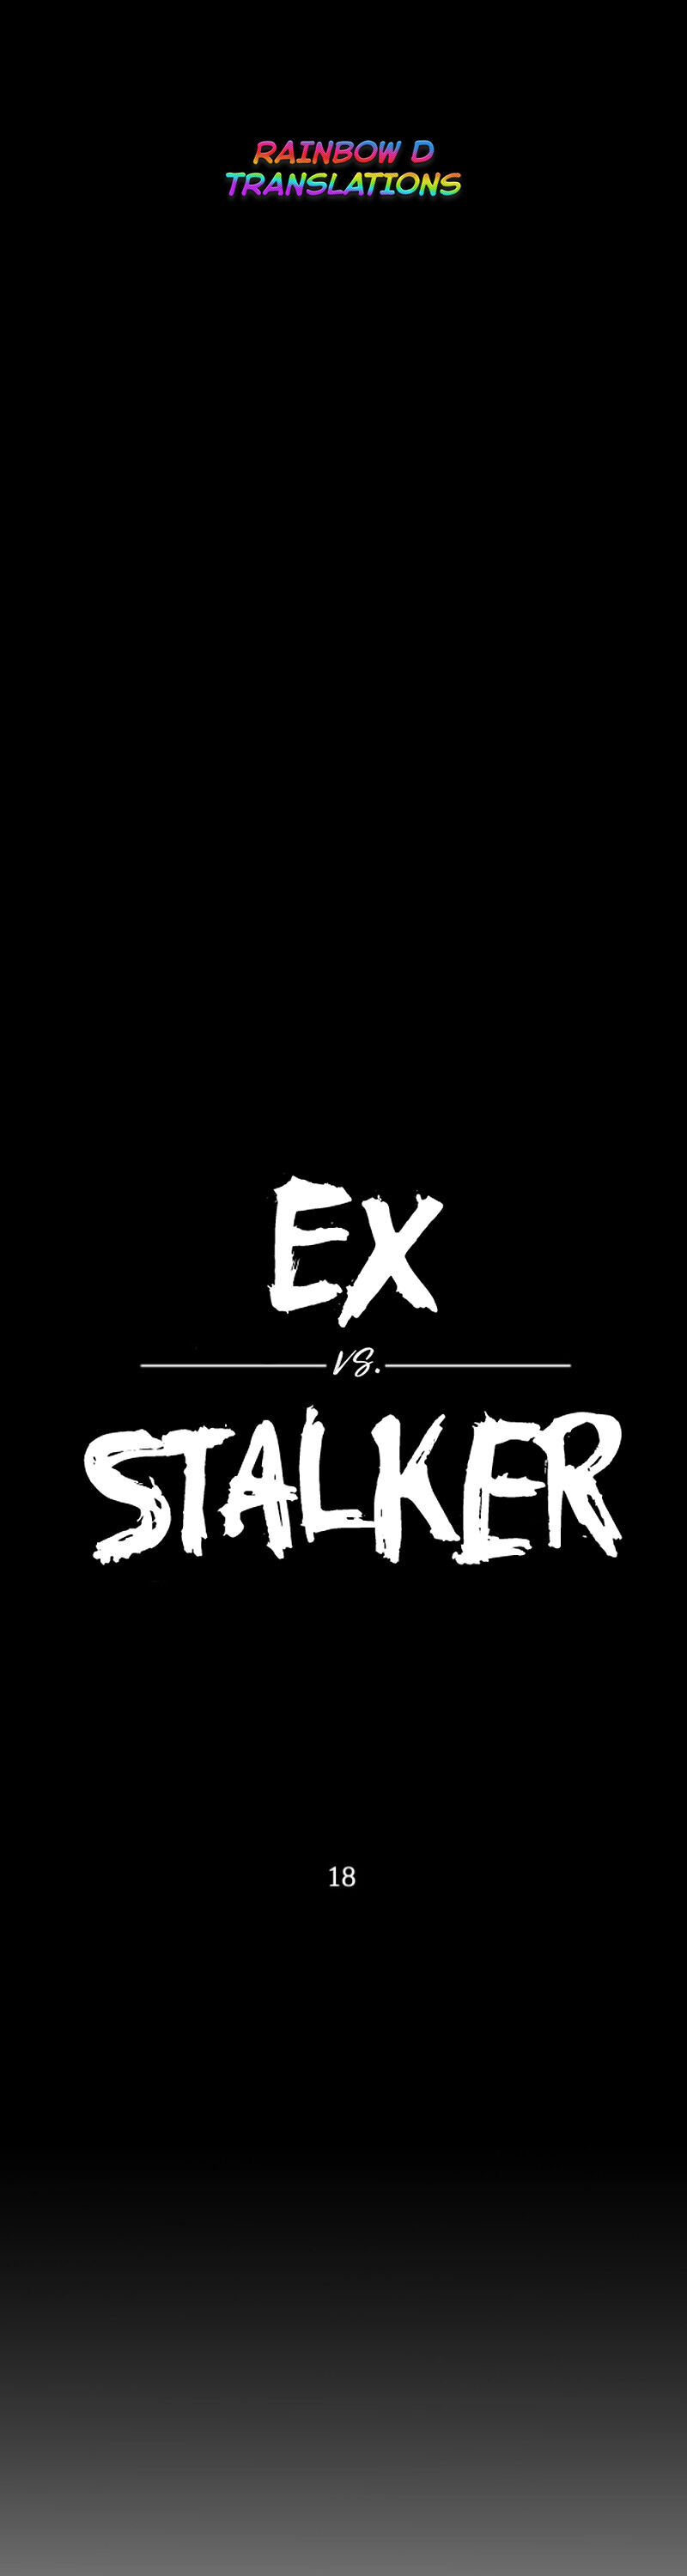 Ex Vs. Stalker - Page 2